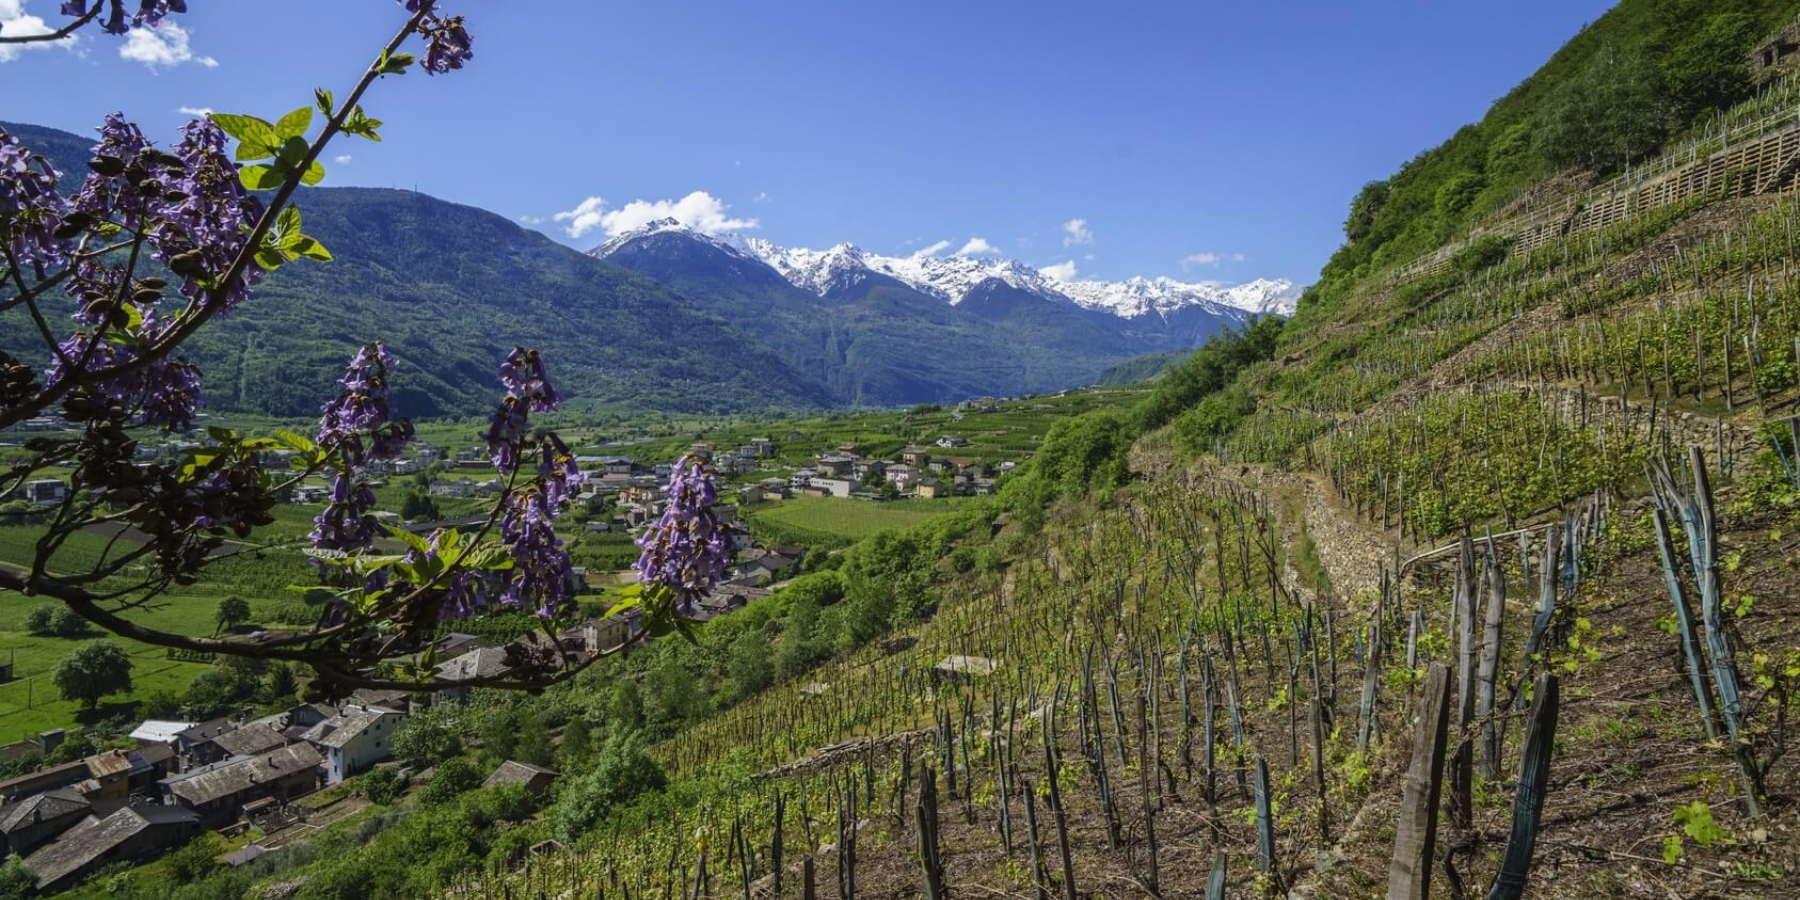 Da Tirano a Bianzone lungo il sentiero del Valtellina Wine Trail